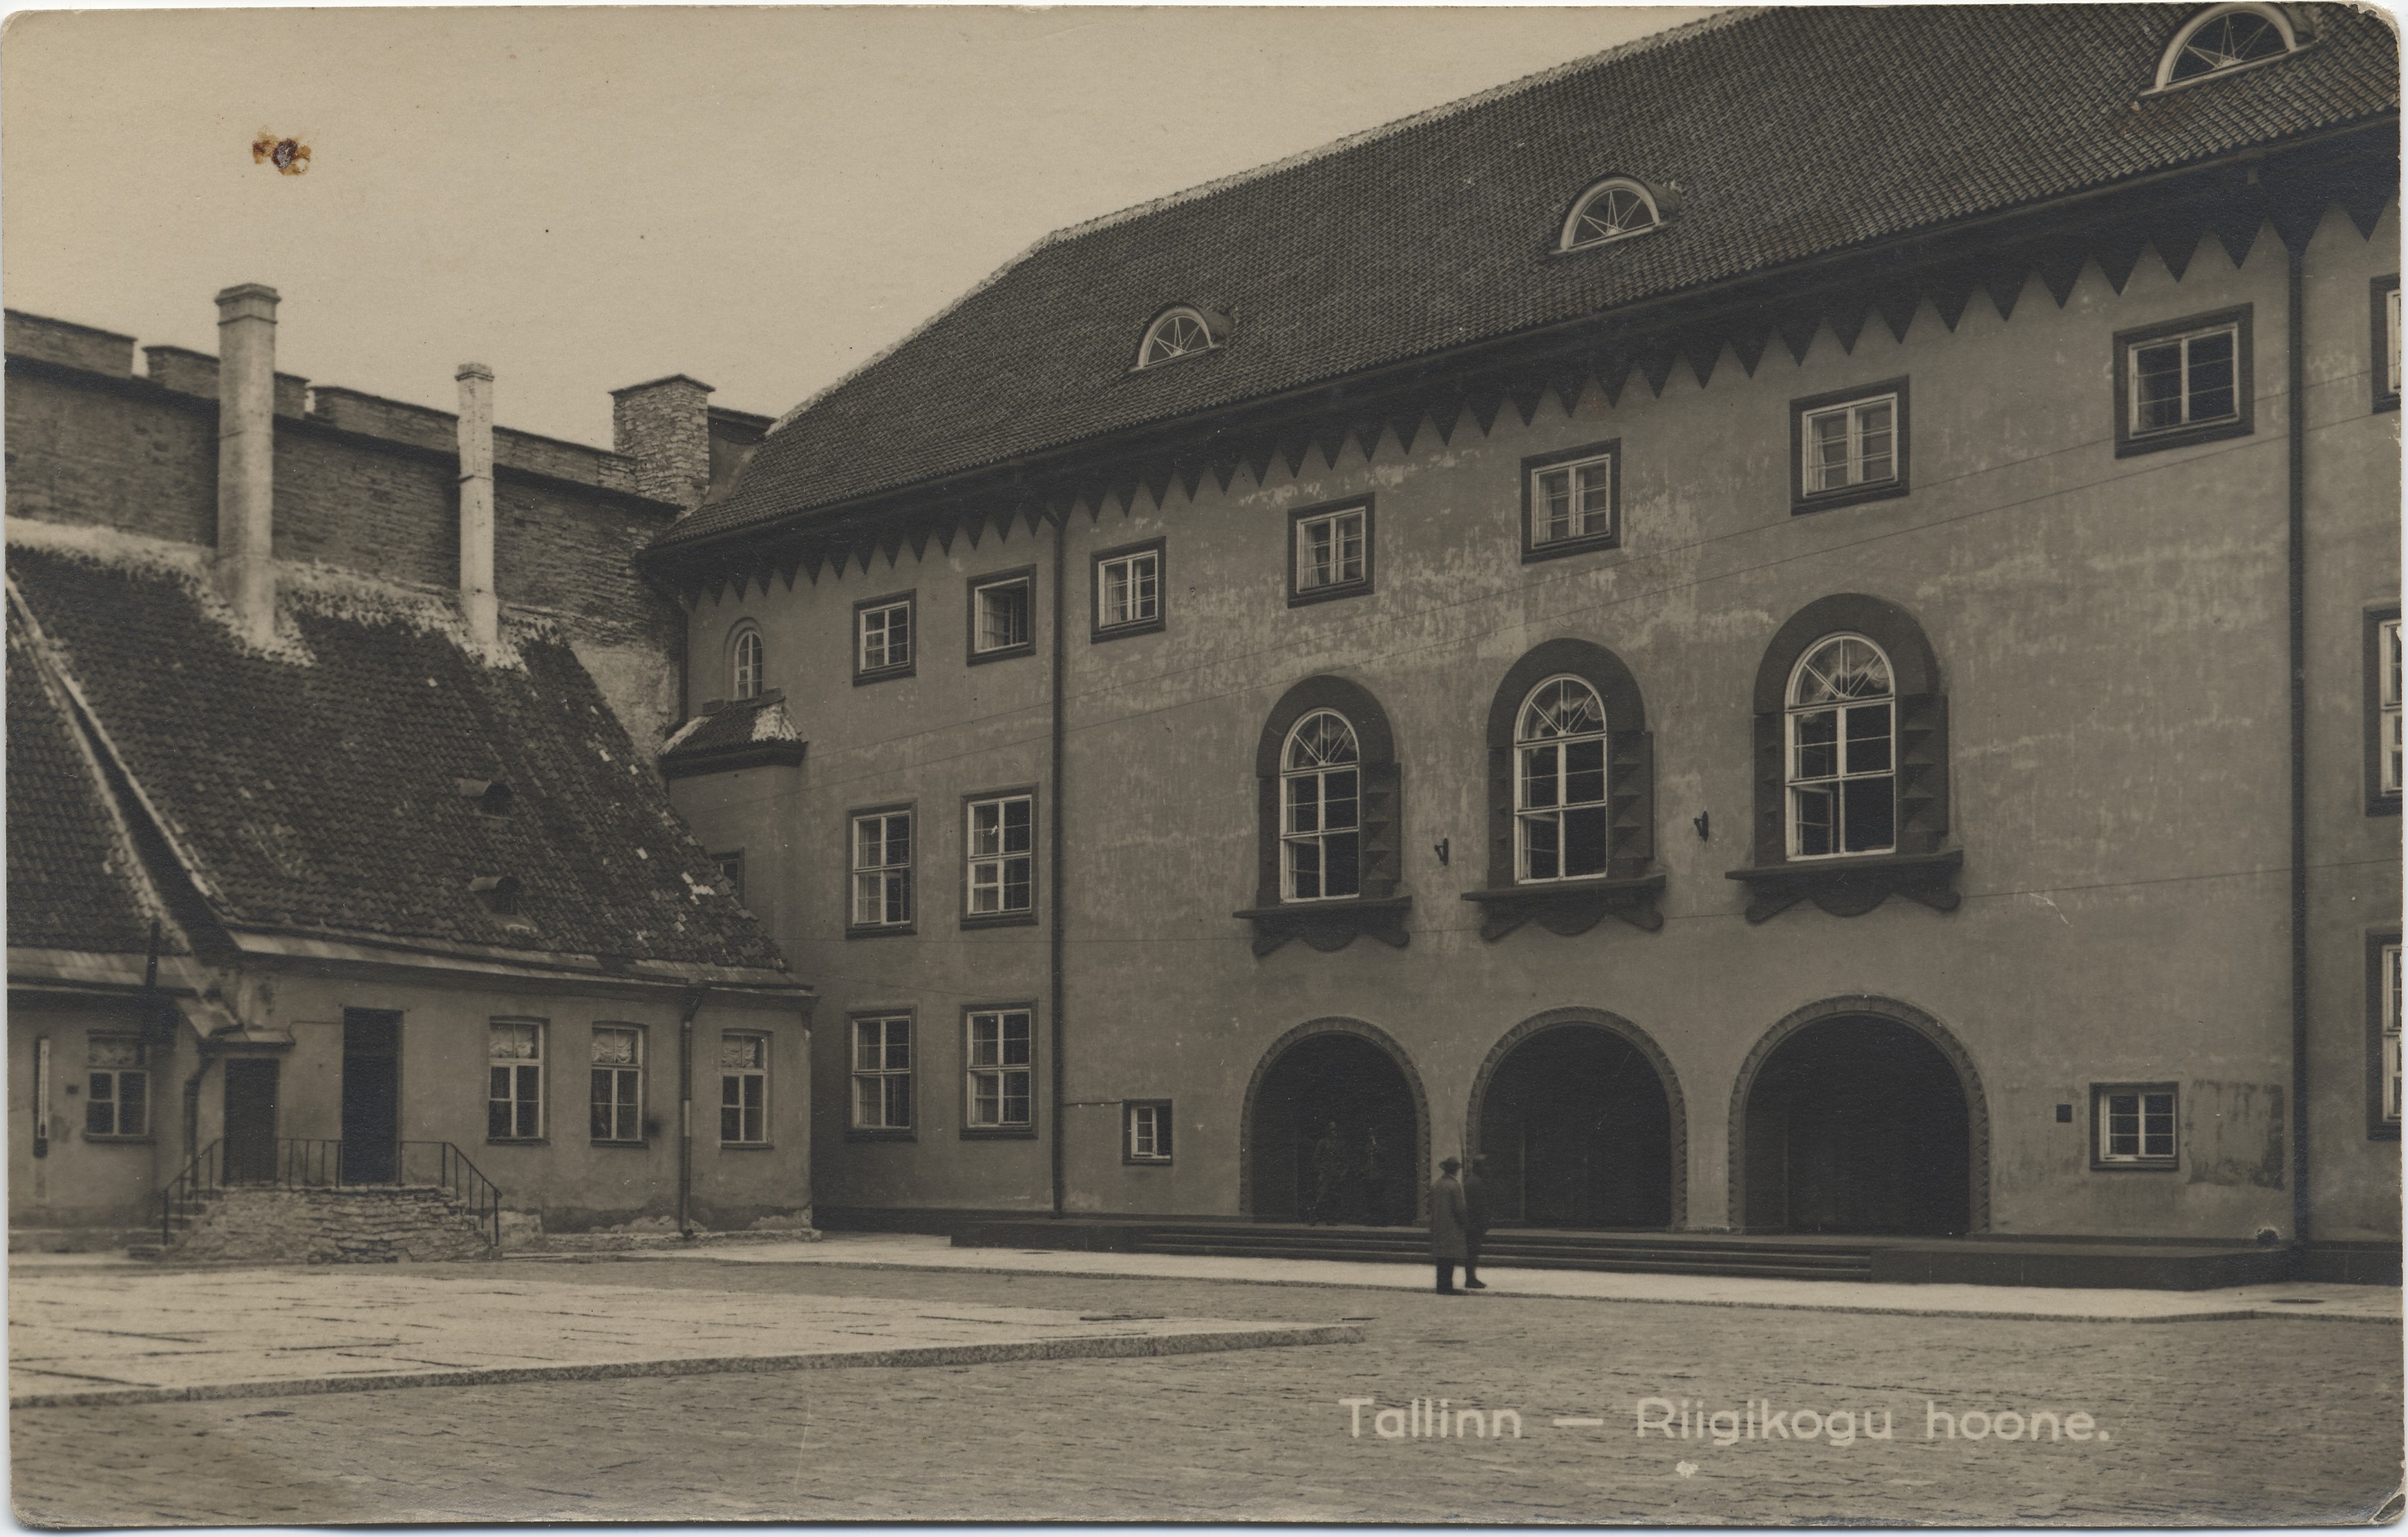 Tallinn : Riigikogu building